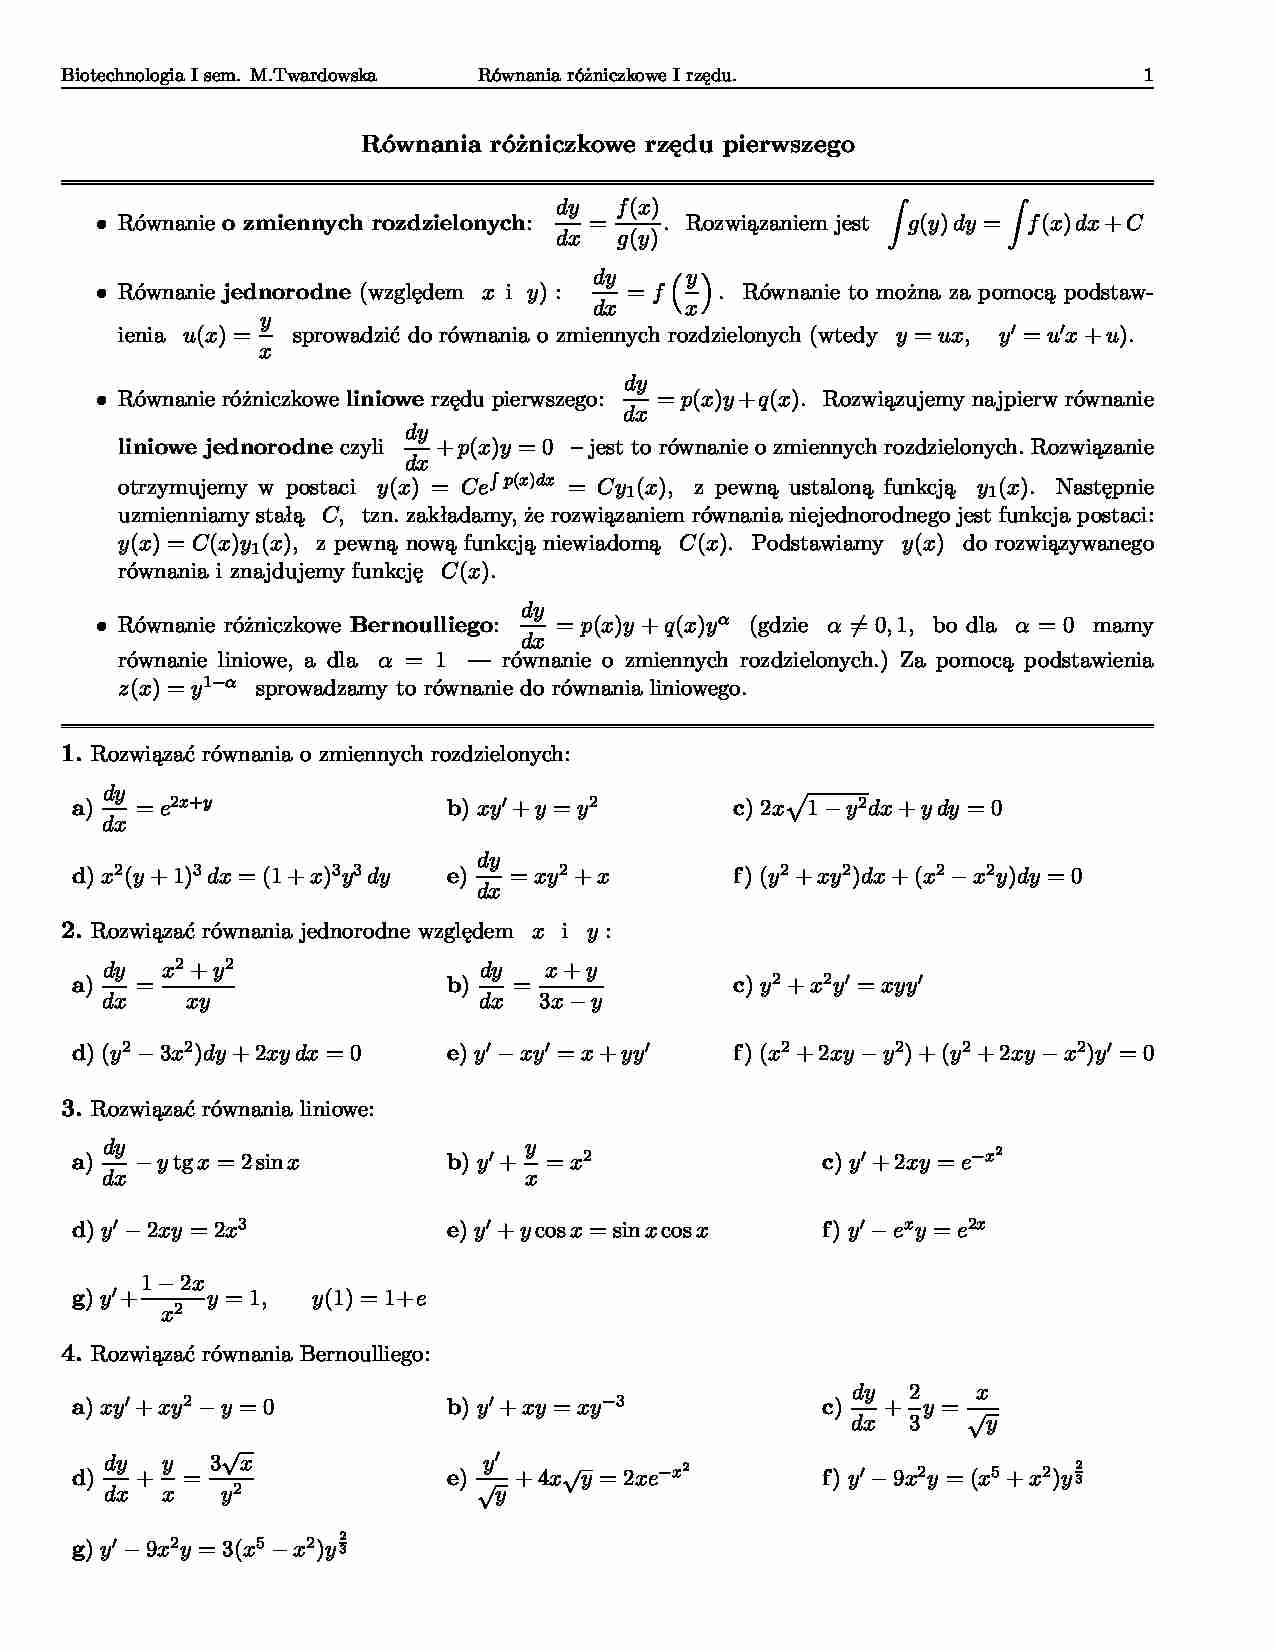 Równania różniczkowe rzędu pierwszego-opracowanie - strona 1